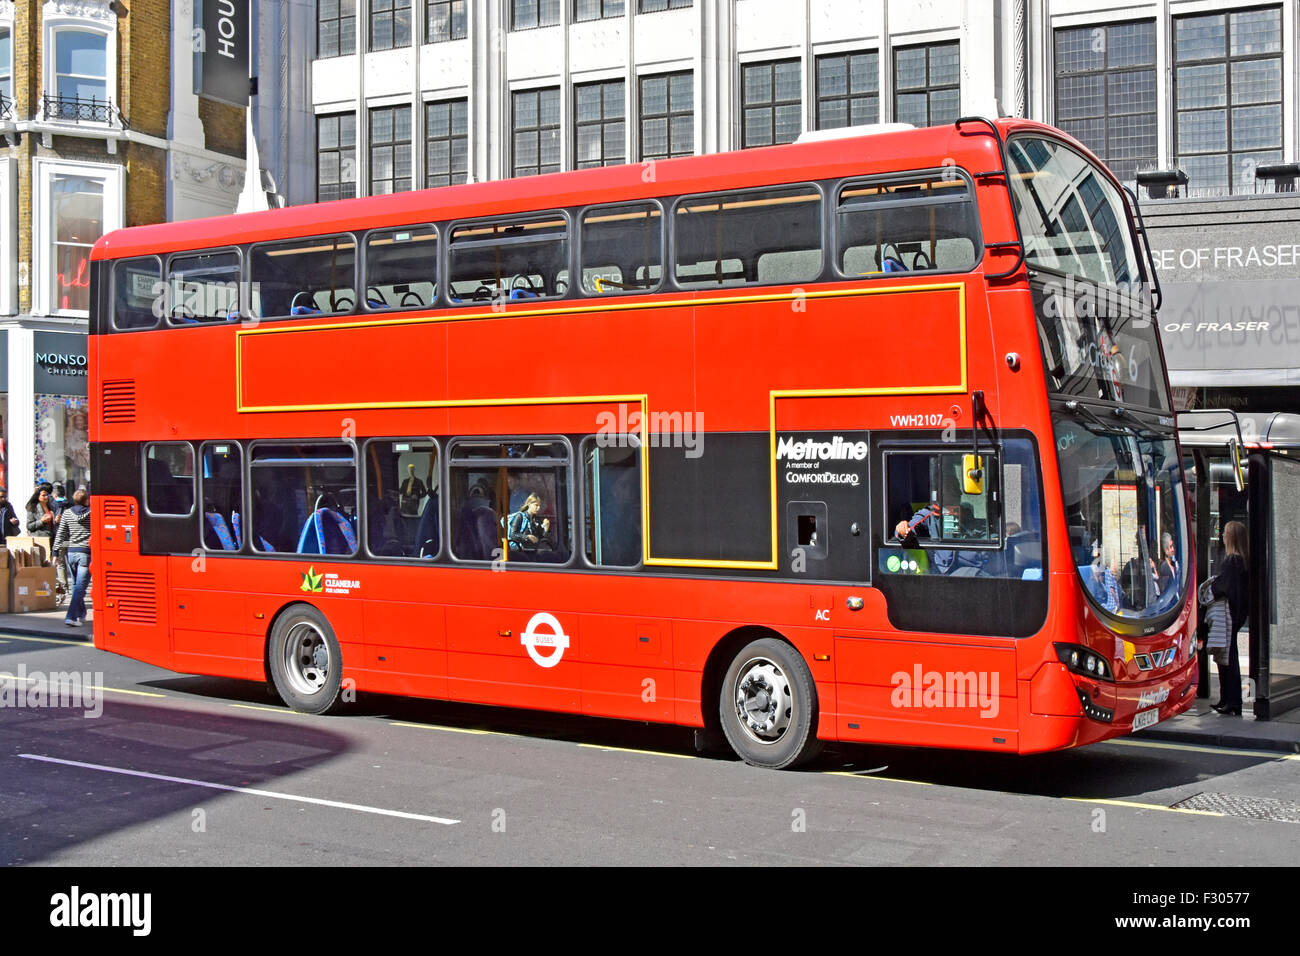 Autobus rosso a due piani trasporto pubblico Hybrid Cleaner Air bus Metroline operatore non pubblicitario esterno alla fermata Oxford Street Inghilterra Regno Unito Foto Stock